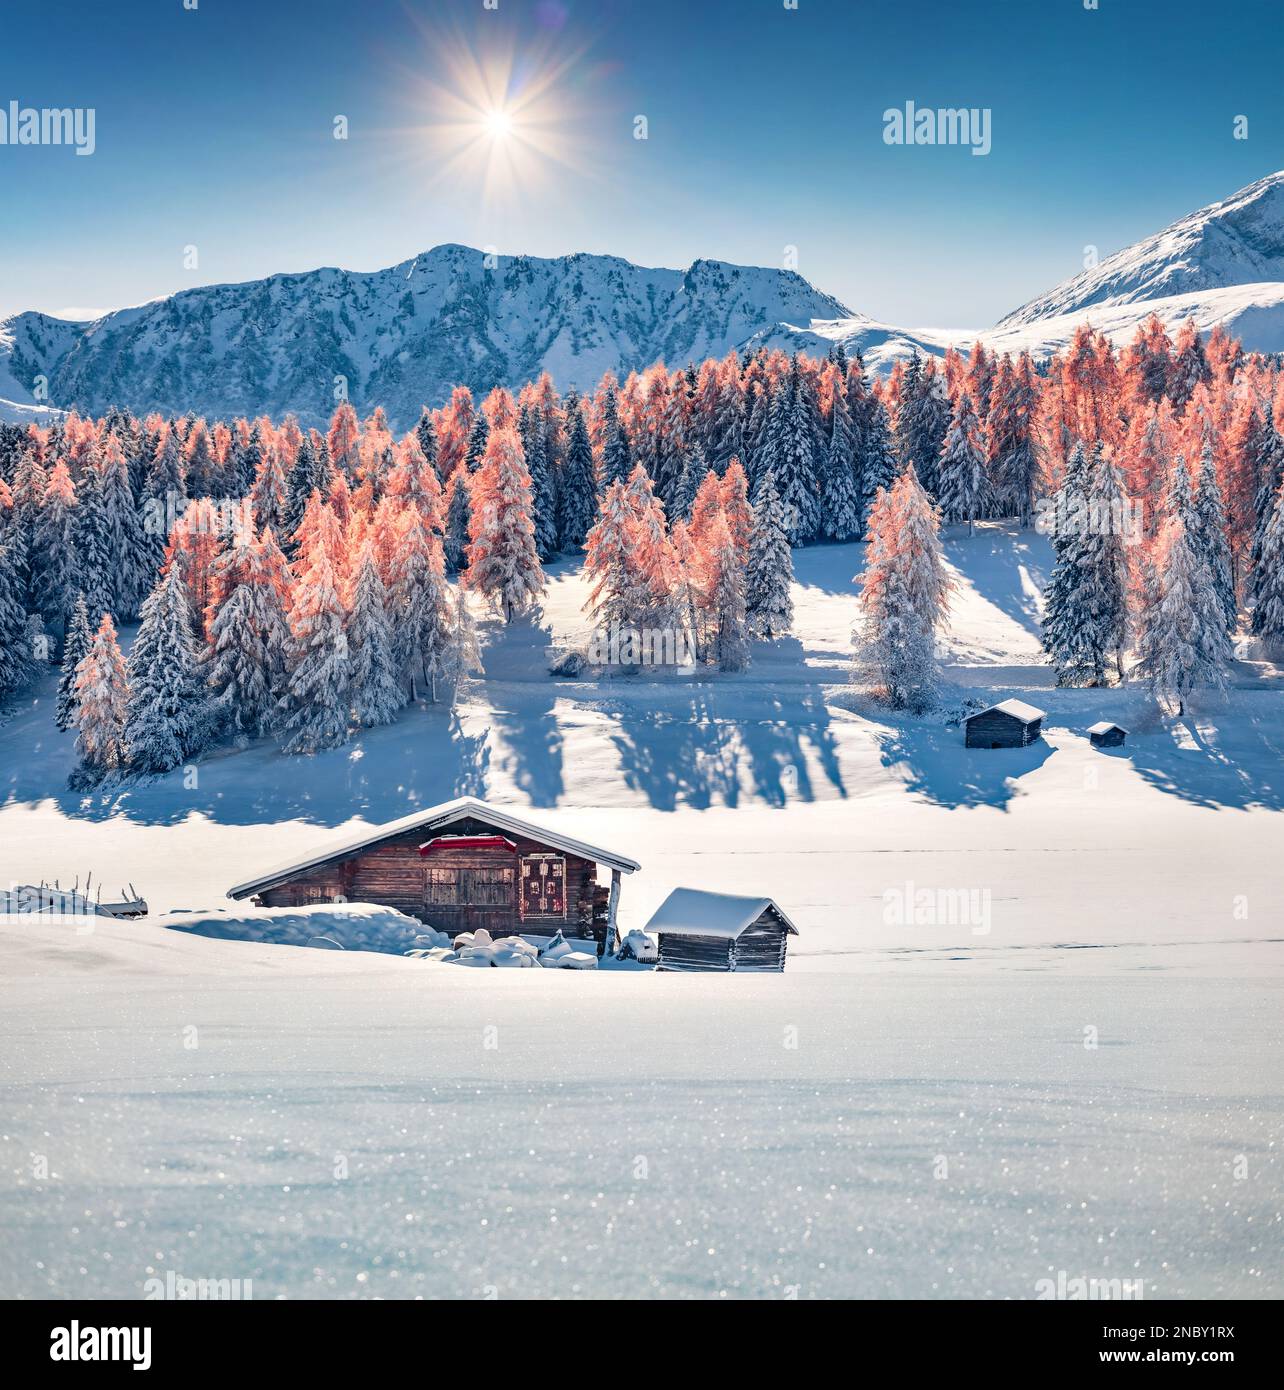 Frischer Schnee, der im Sonnenlicht glitzert. Heller Blick am Morgen auf das Dorf Alpe di Siusi. Atemberaubende Winterszene der Dolomiten-Alpen. Fantastische Skilandschaft Stockfoto